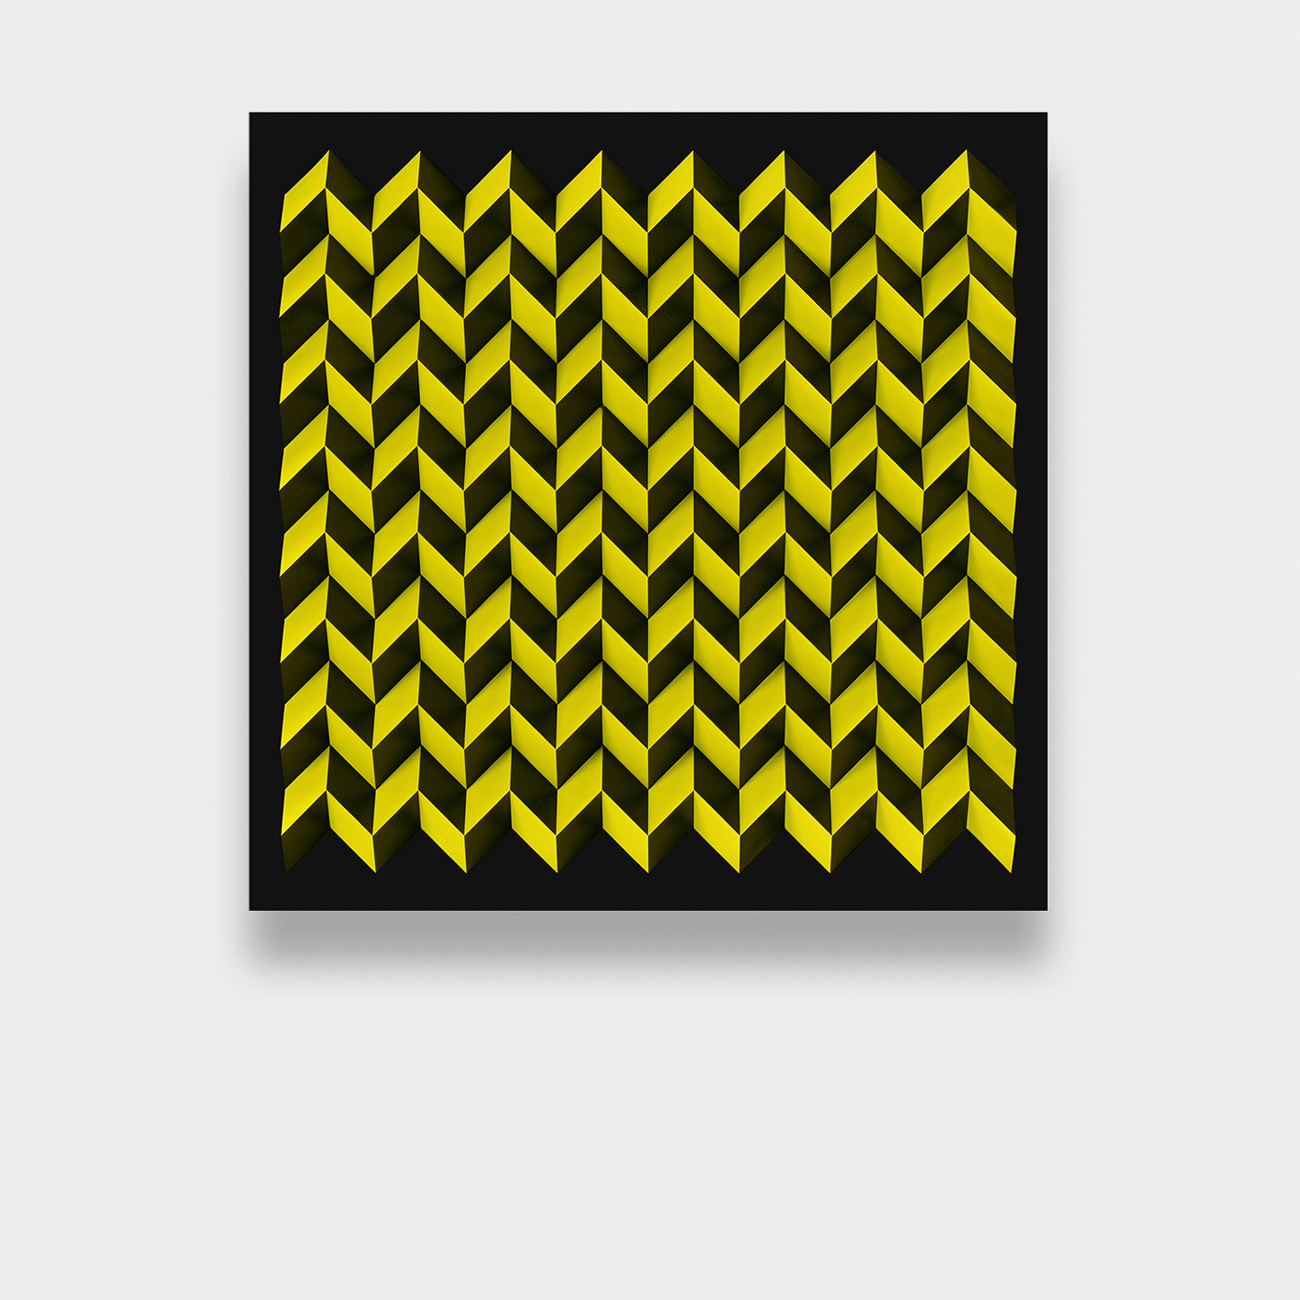 Foldart Papferfold schwarz-gelb. Basis Acryl, schwarz